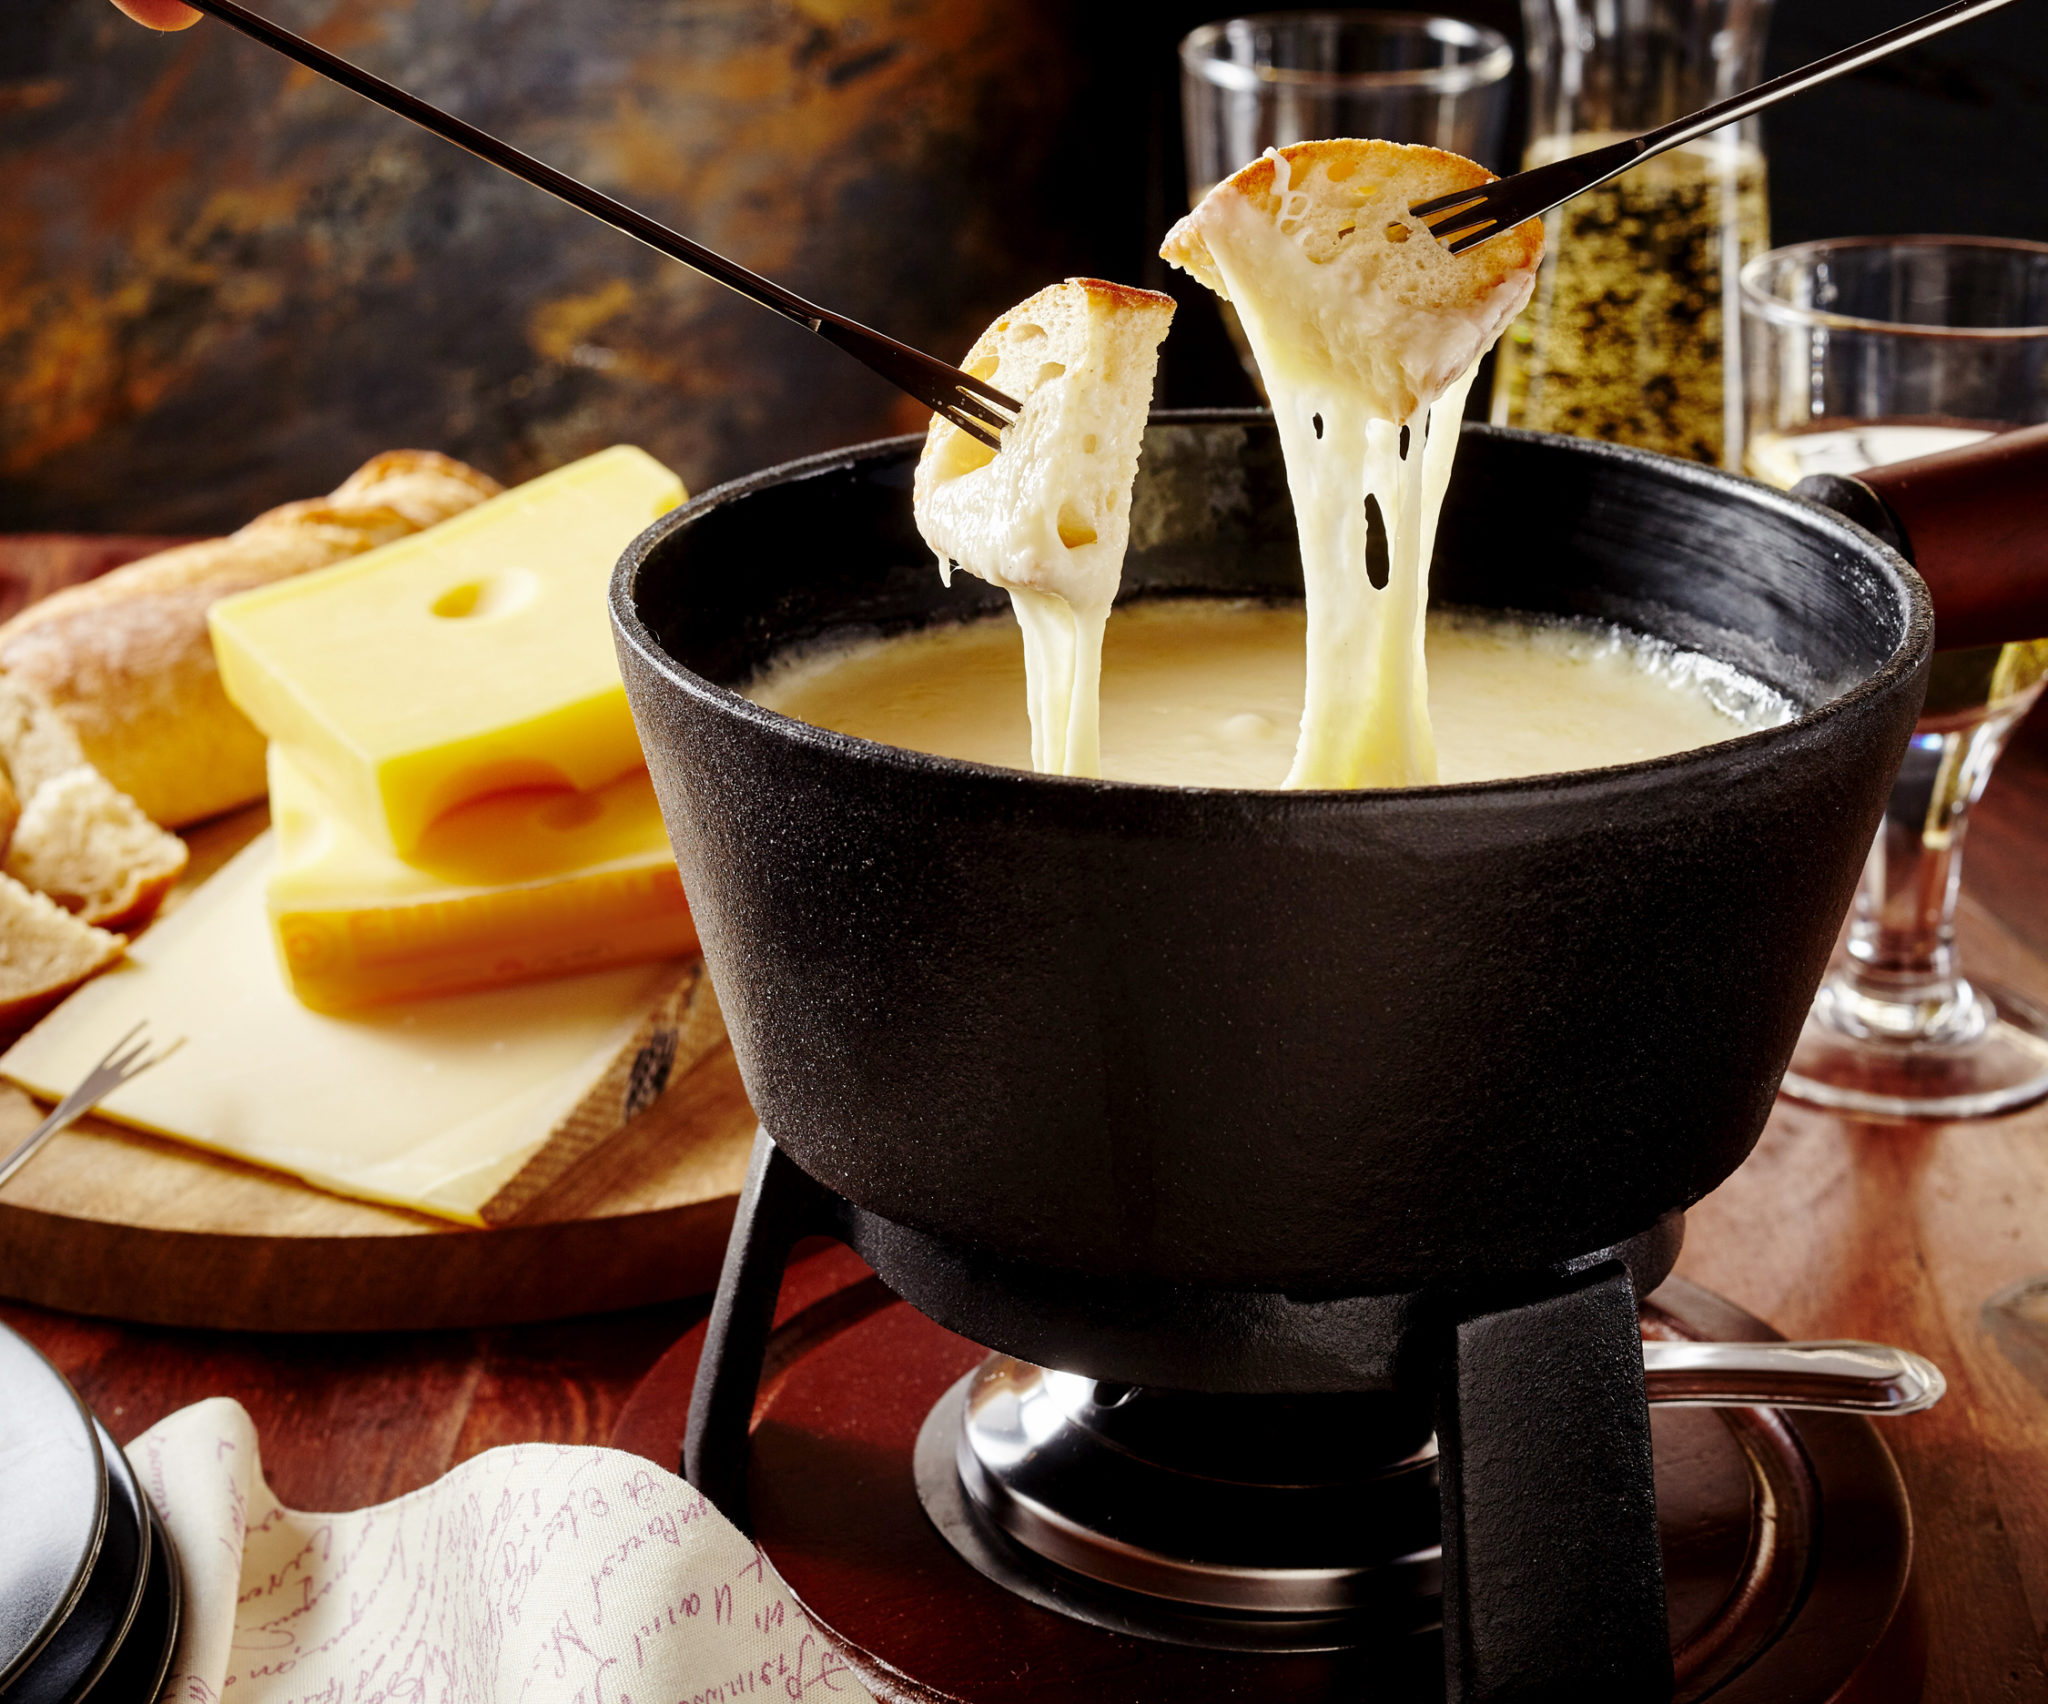 Où manger une vraie fondue savoyarde à Annecy ? J'ai la réponse !